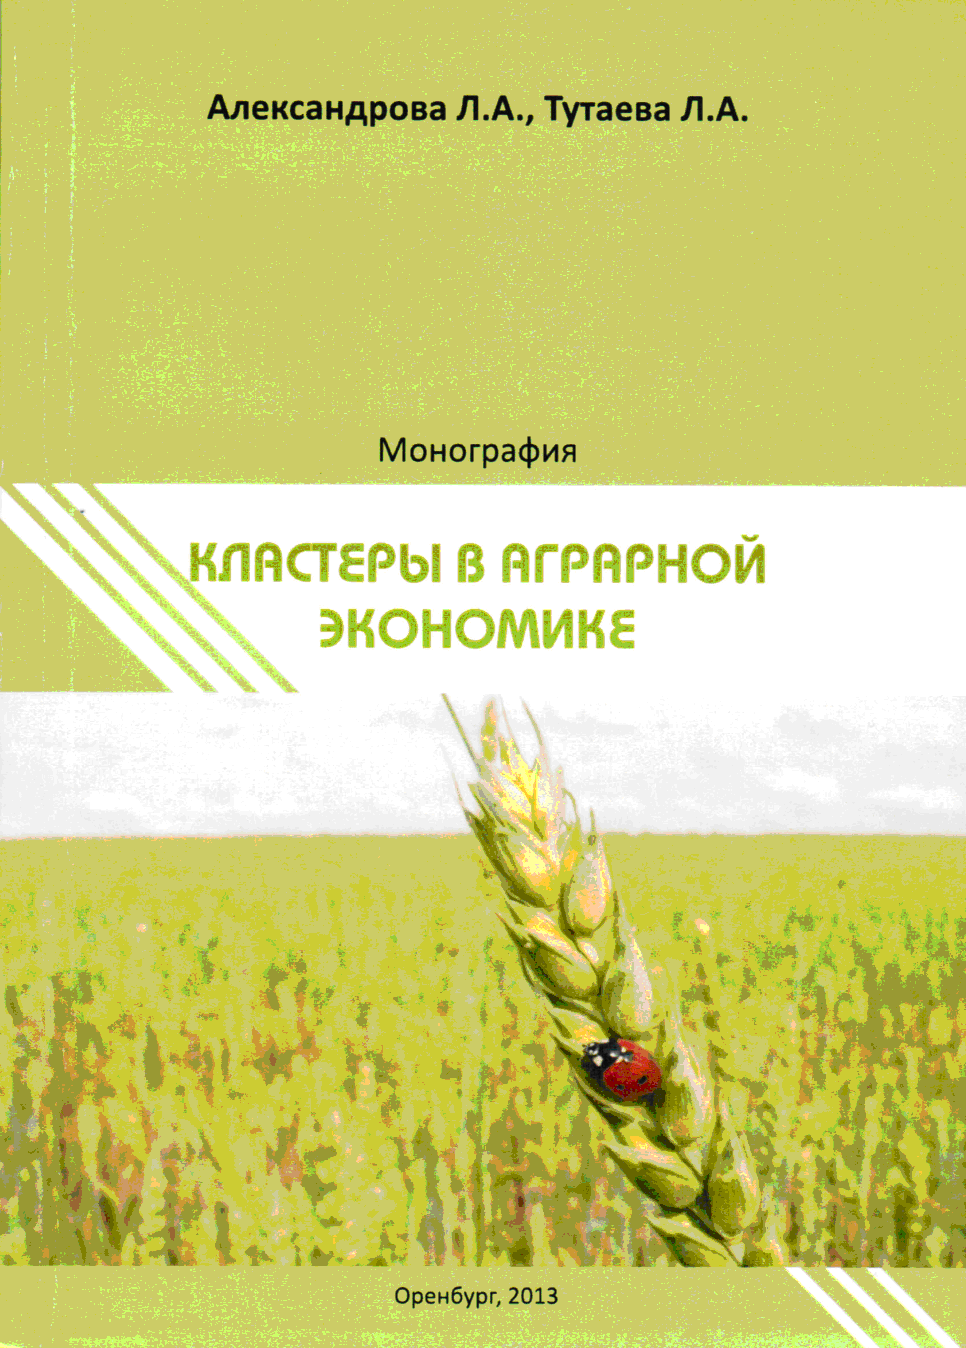 Монография "Кластеры в аграрной экономике"